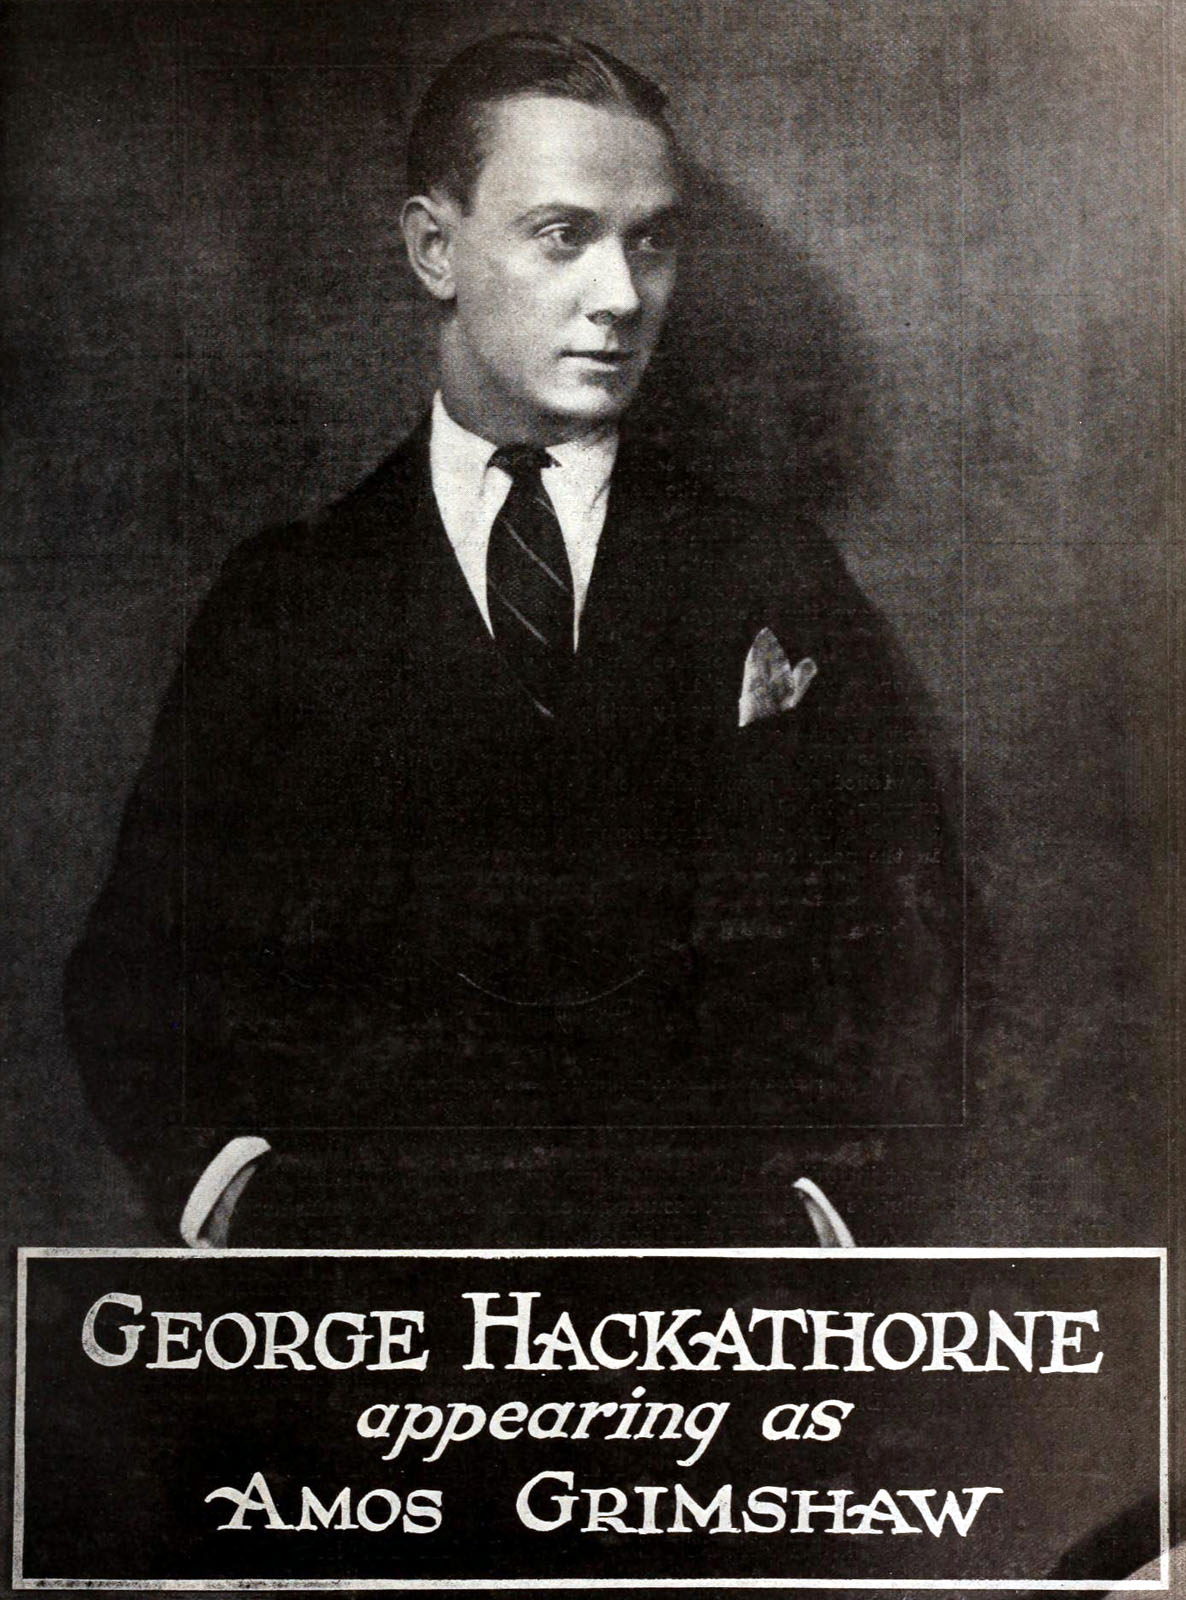 George Hackathorne